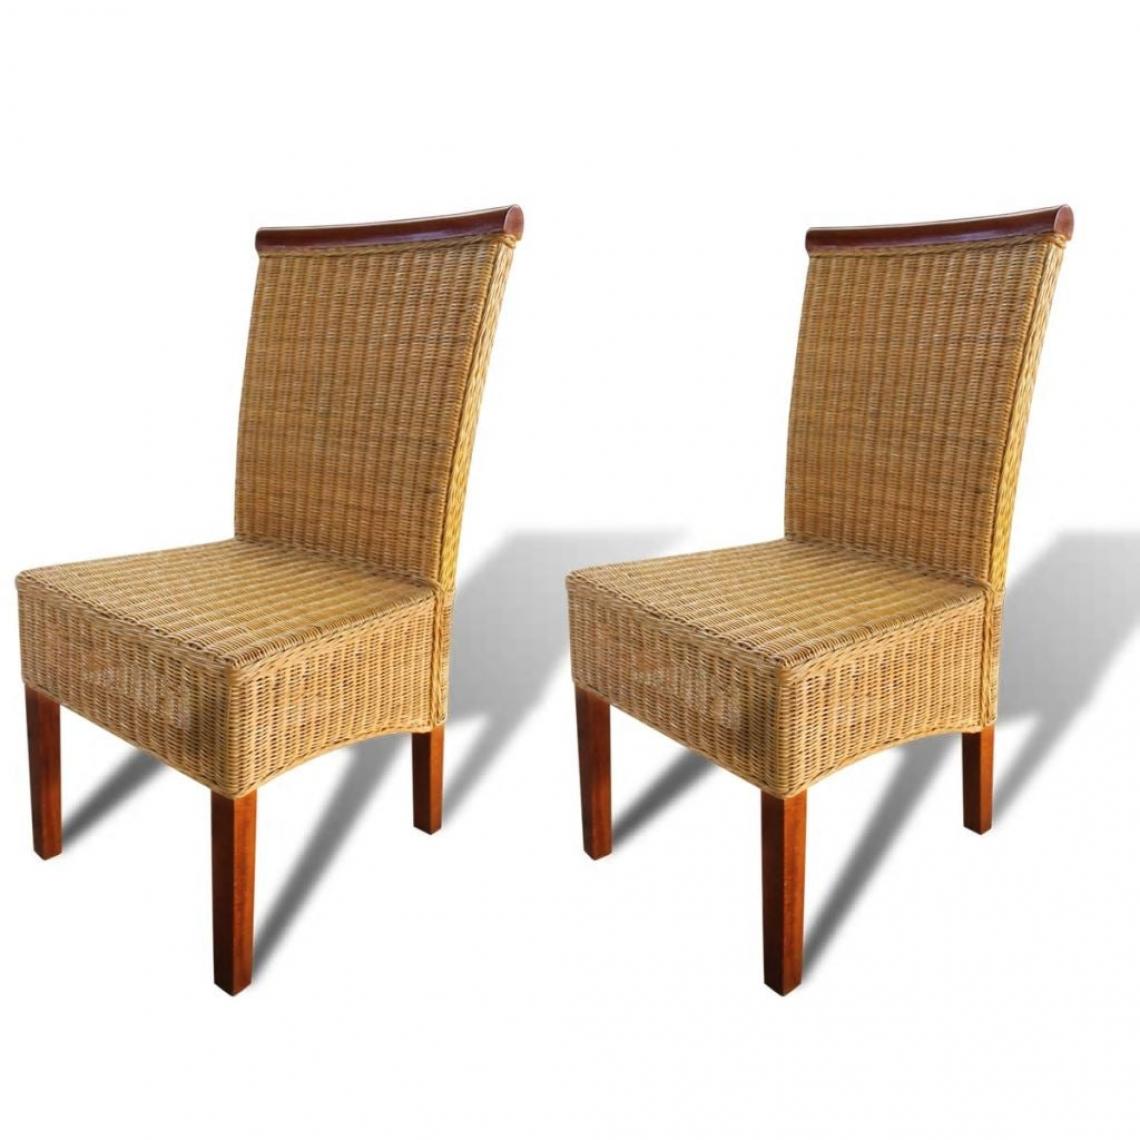 Decoshop26 - Lot de 2 chaises de salle à manger cuisine design moderne rotin naturel marron CDS020704 - Chaises